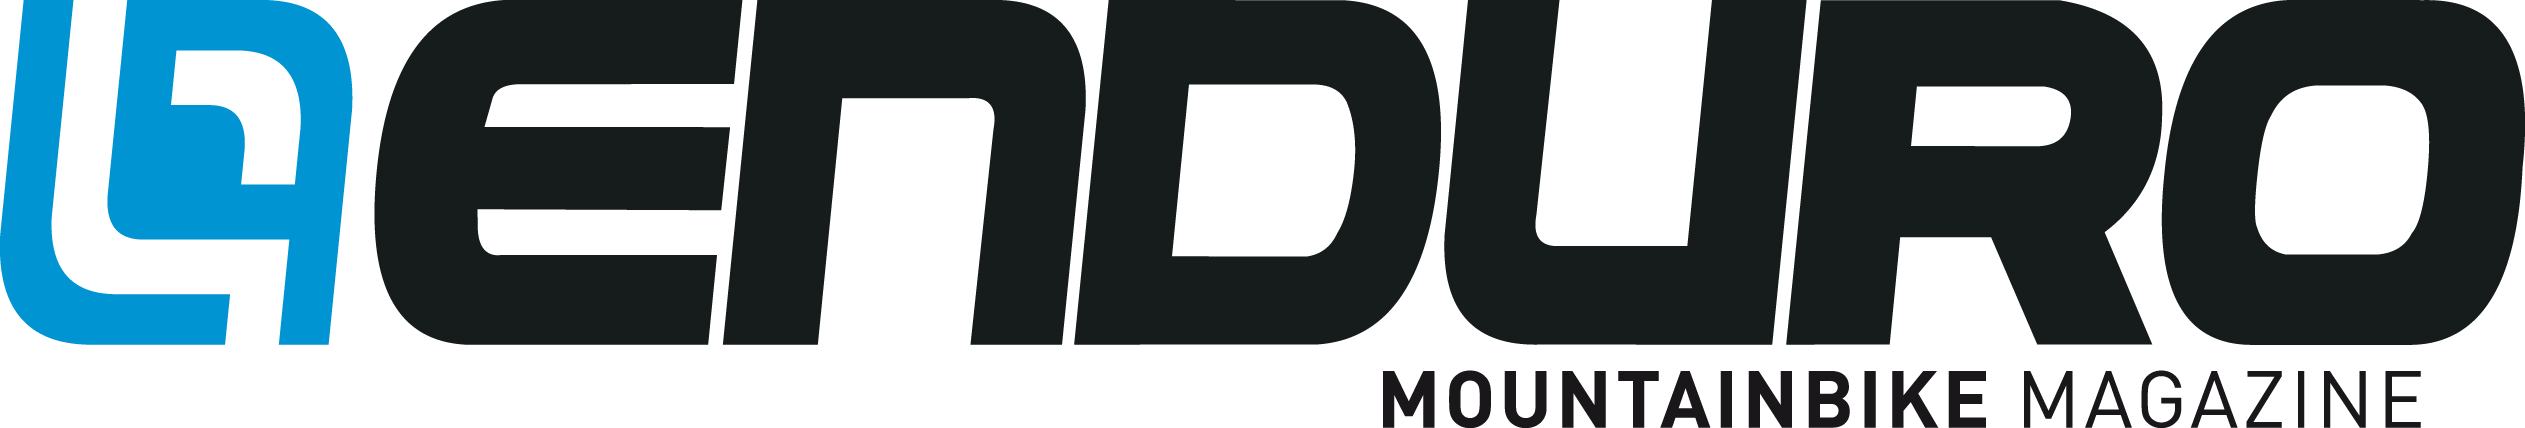 Enduro Mountainbike Magazine logo